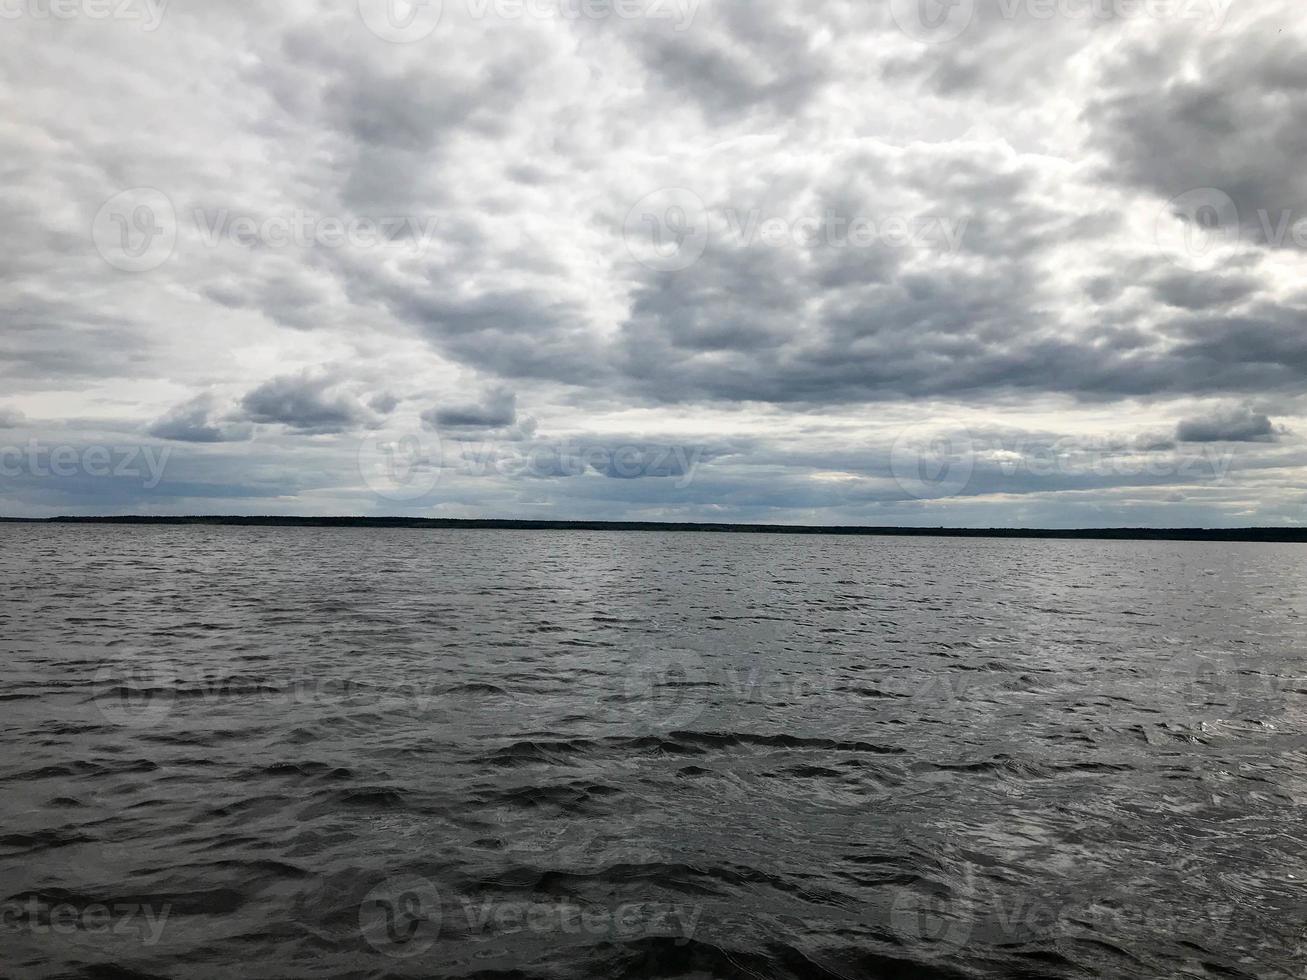 paisagem da natureza da linha do horizonte com vista para a costa, água com ondas do meio do lago no tempo frio e nublado foto